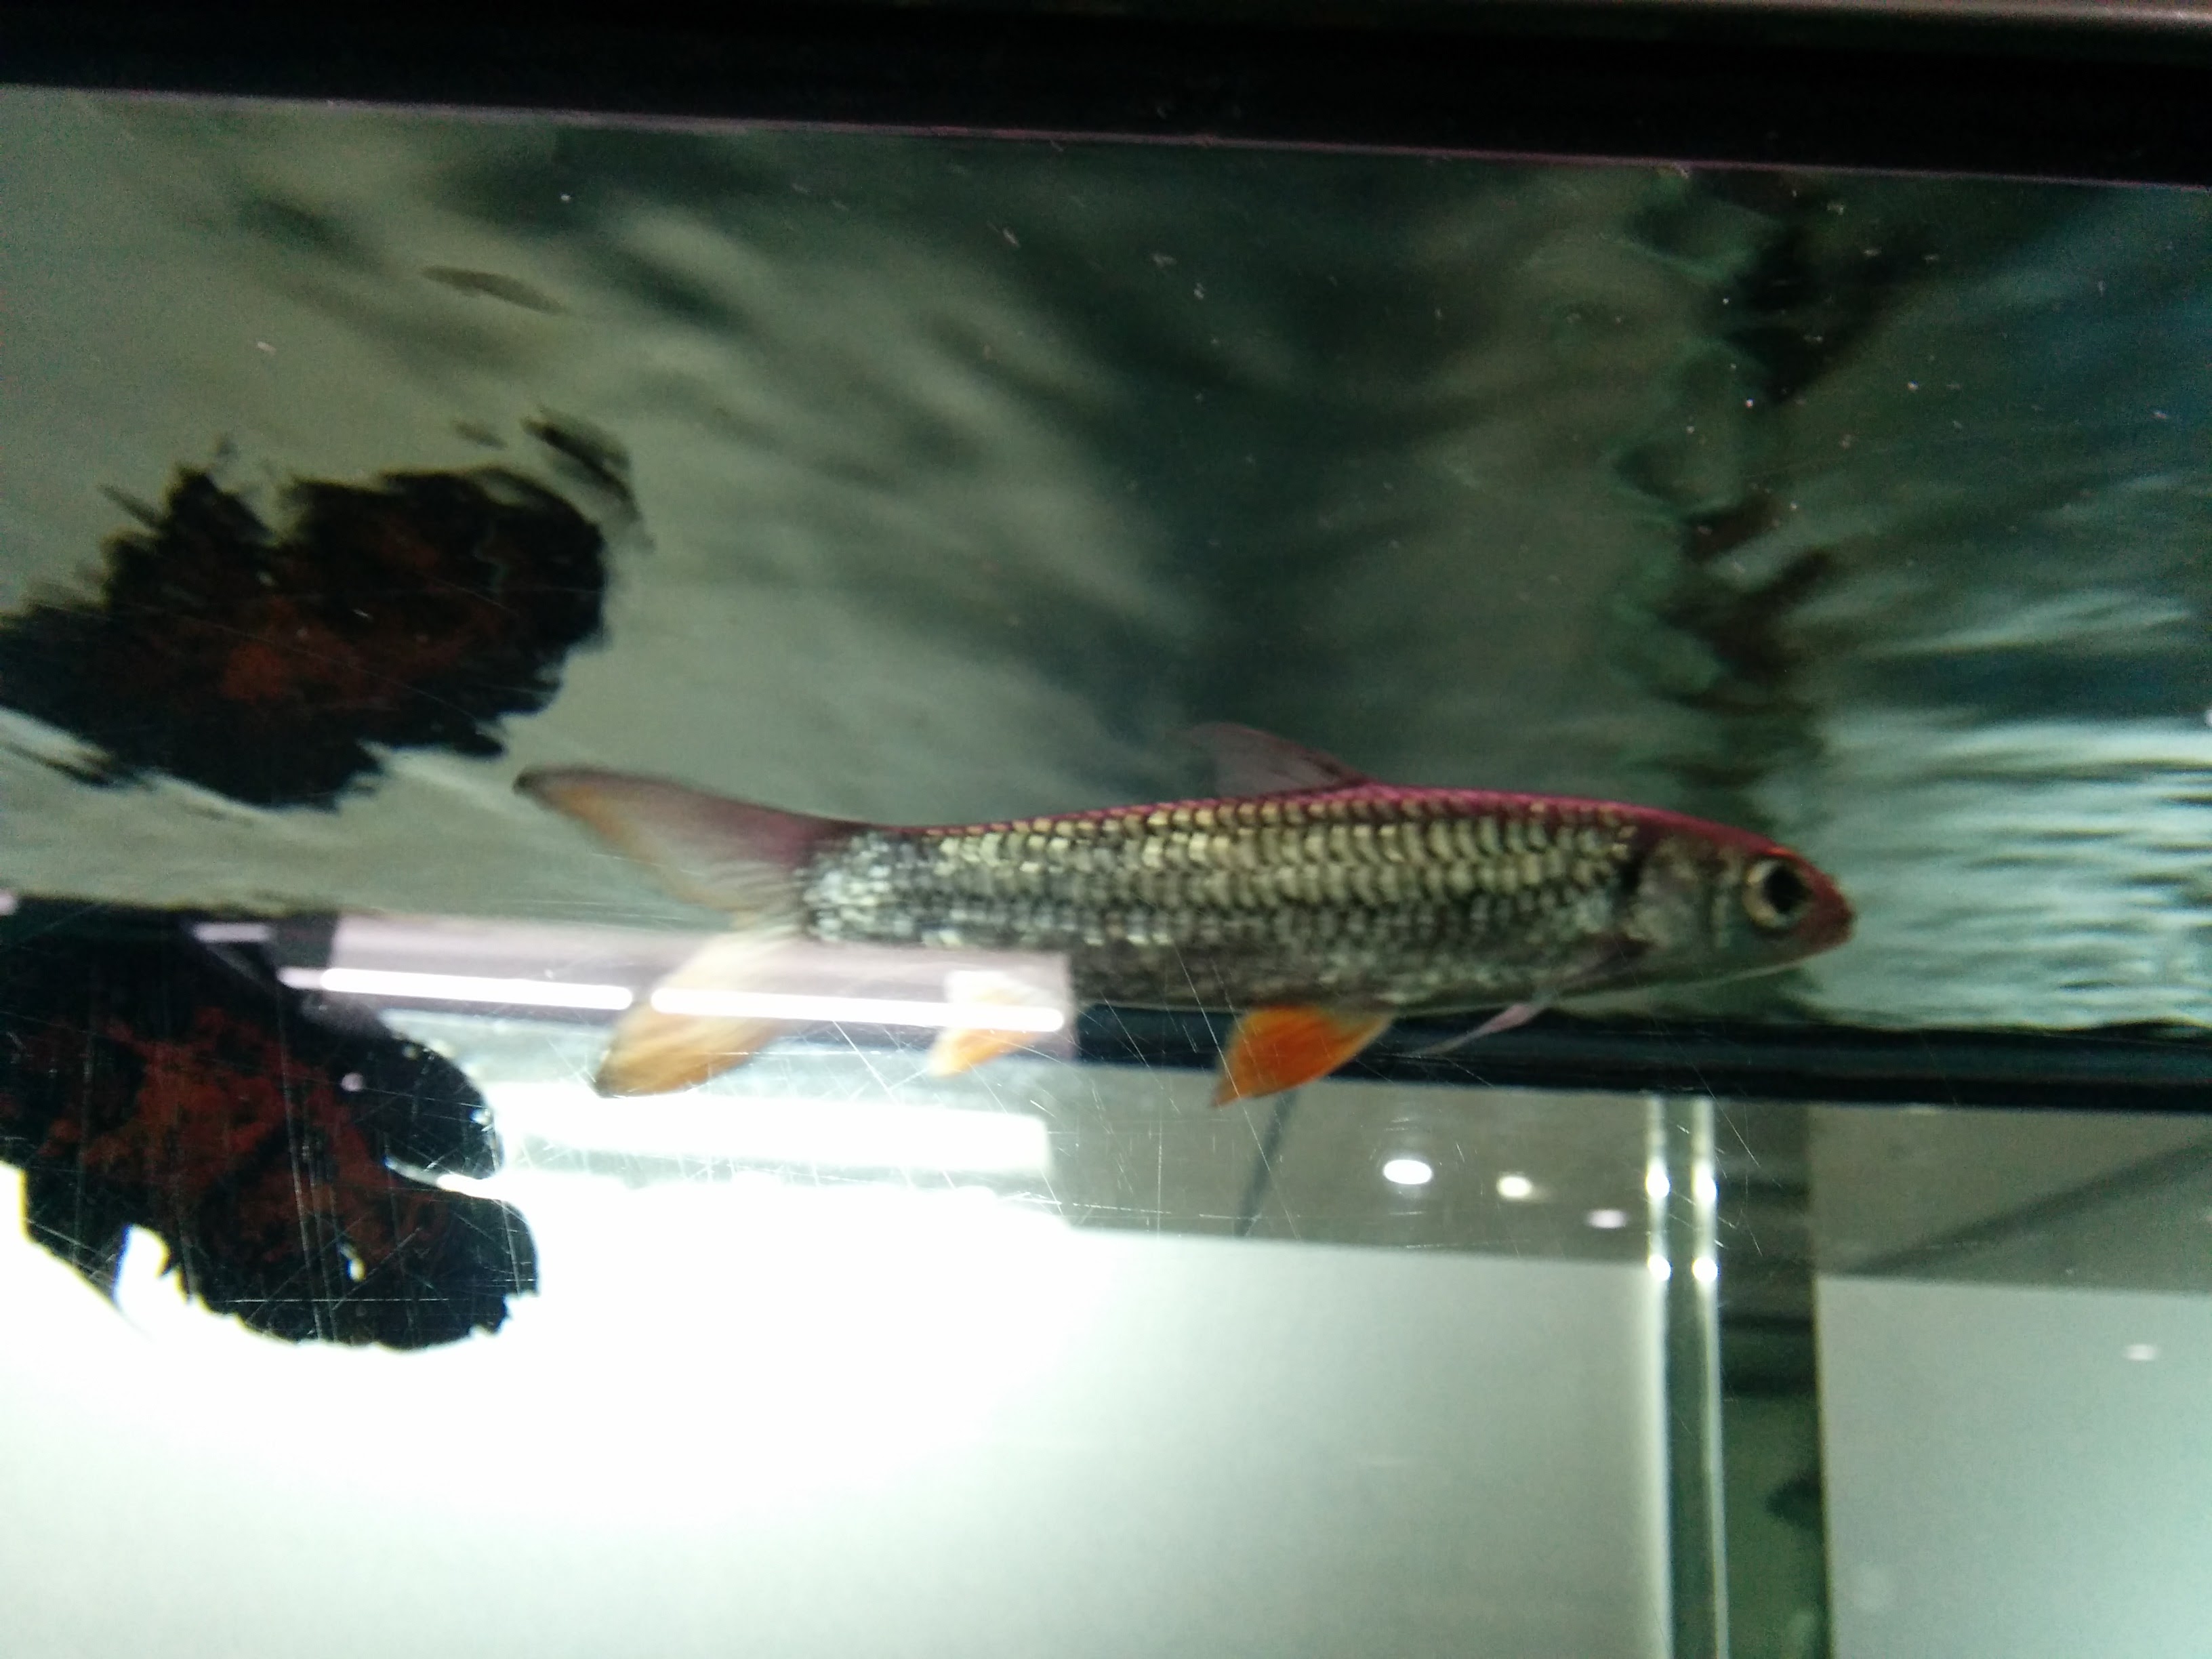 IMG_20151207_141626.jpg 수족관의 은색 관상용 물고기, 주황색 지느러미... 제르돈 바브(Hypselobarbus jerdoni)